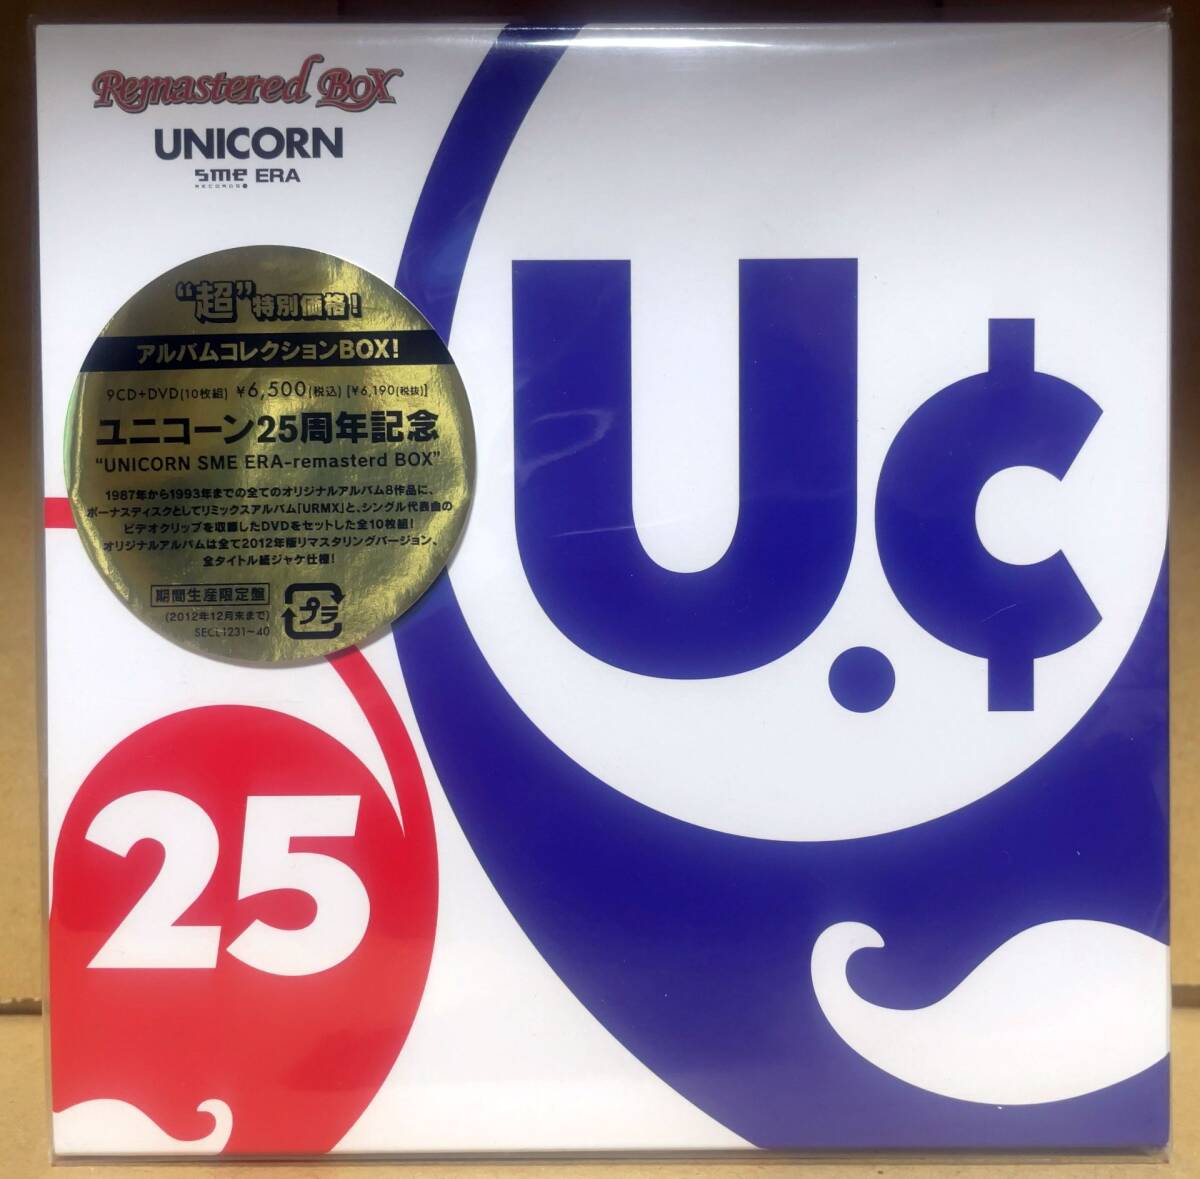 ユニコーン/UNICORN SME ERA-remastered BOX(9CD+DVD)※復刻ゲストパス付の画像1